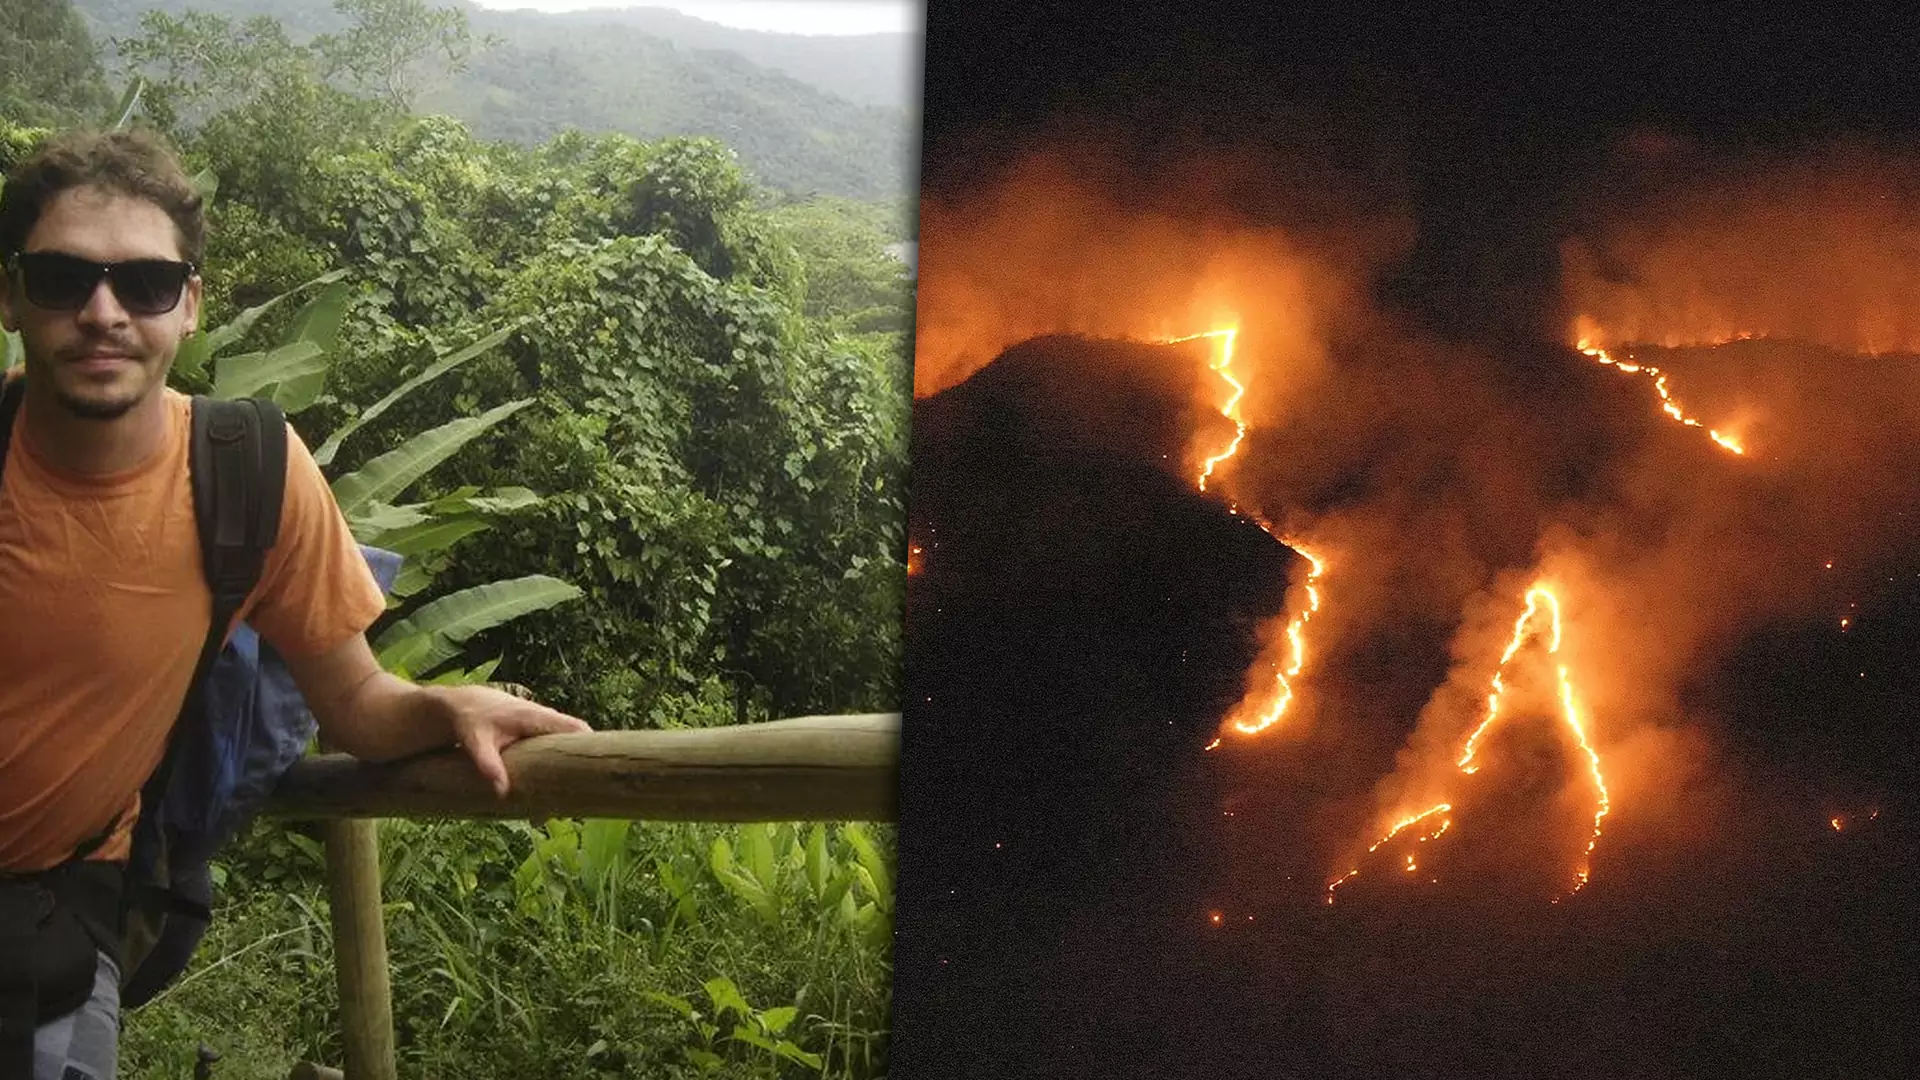 Badacz Amazonii dla NOIZZ: Część pożarów wzniecano celowo, nawet na obszarach ściśle chronionych